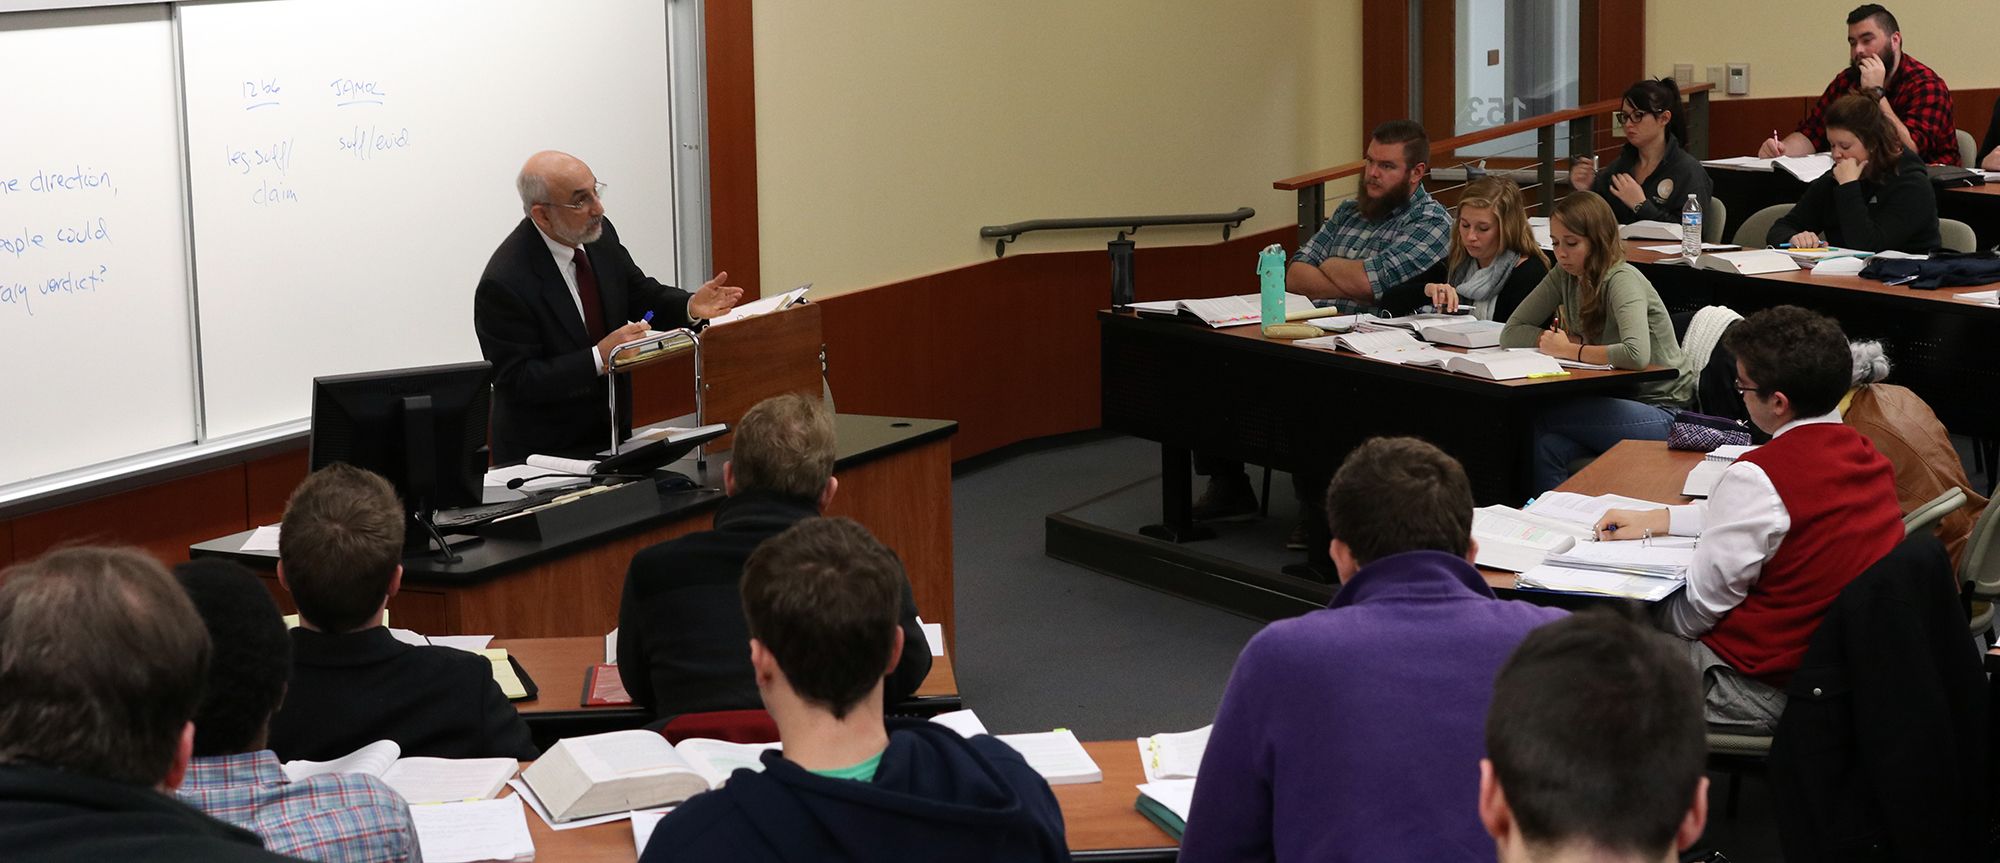 WVU Law Professor Chuck DiSalvo teaching